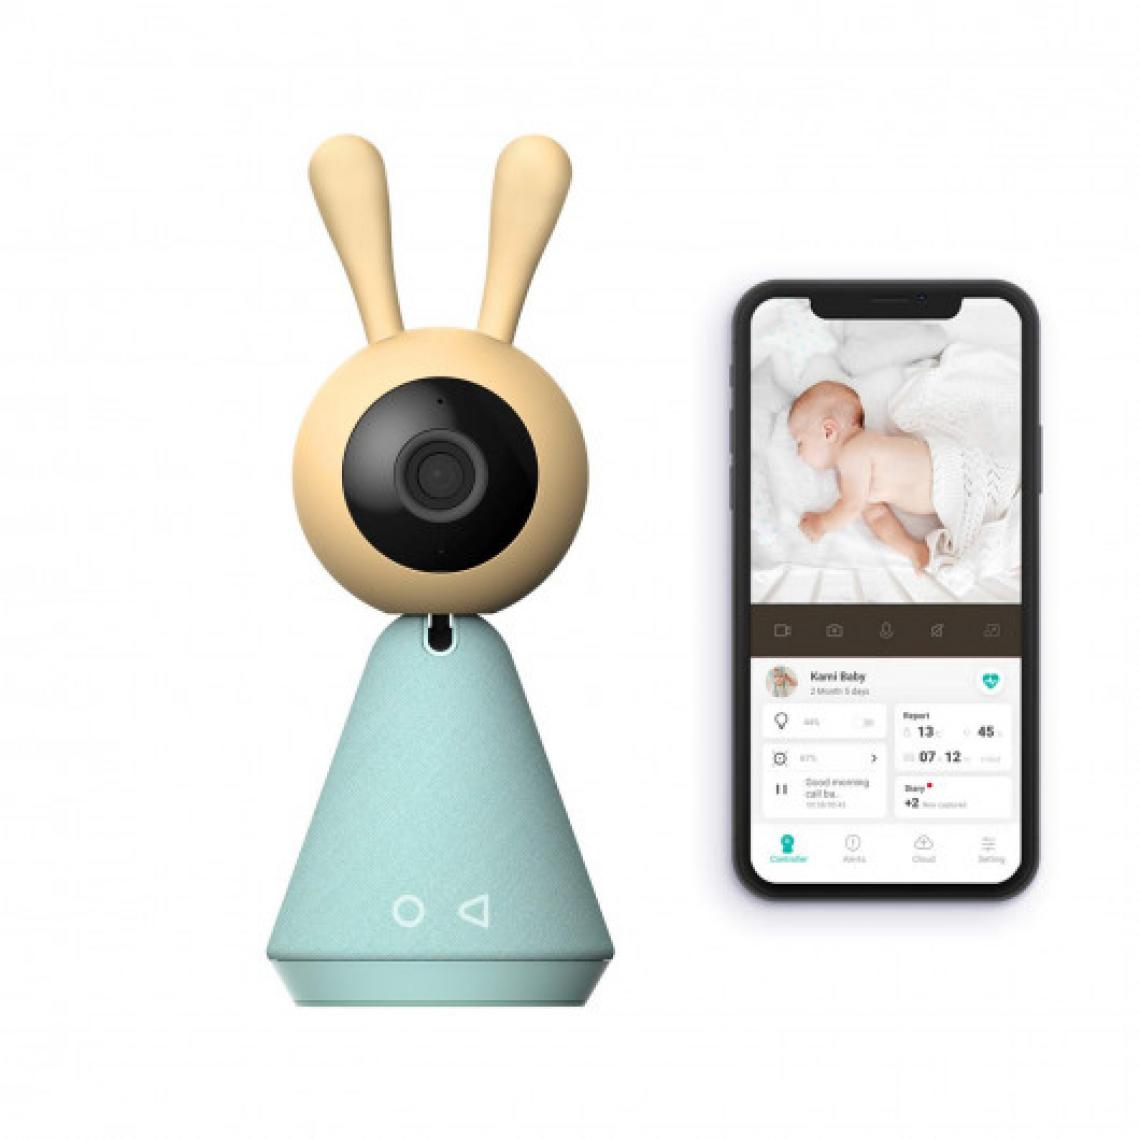 Ofs Selection - Kamibaby, la caméra tout-en-un pour bébé - Babyphone connecté